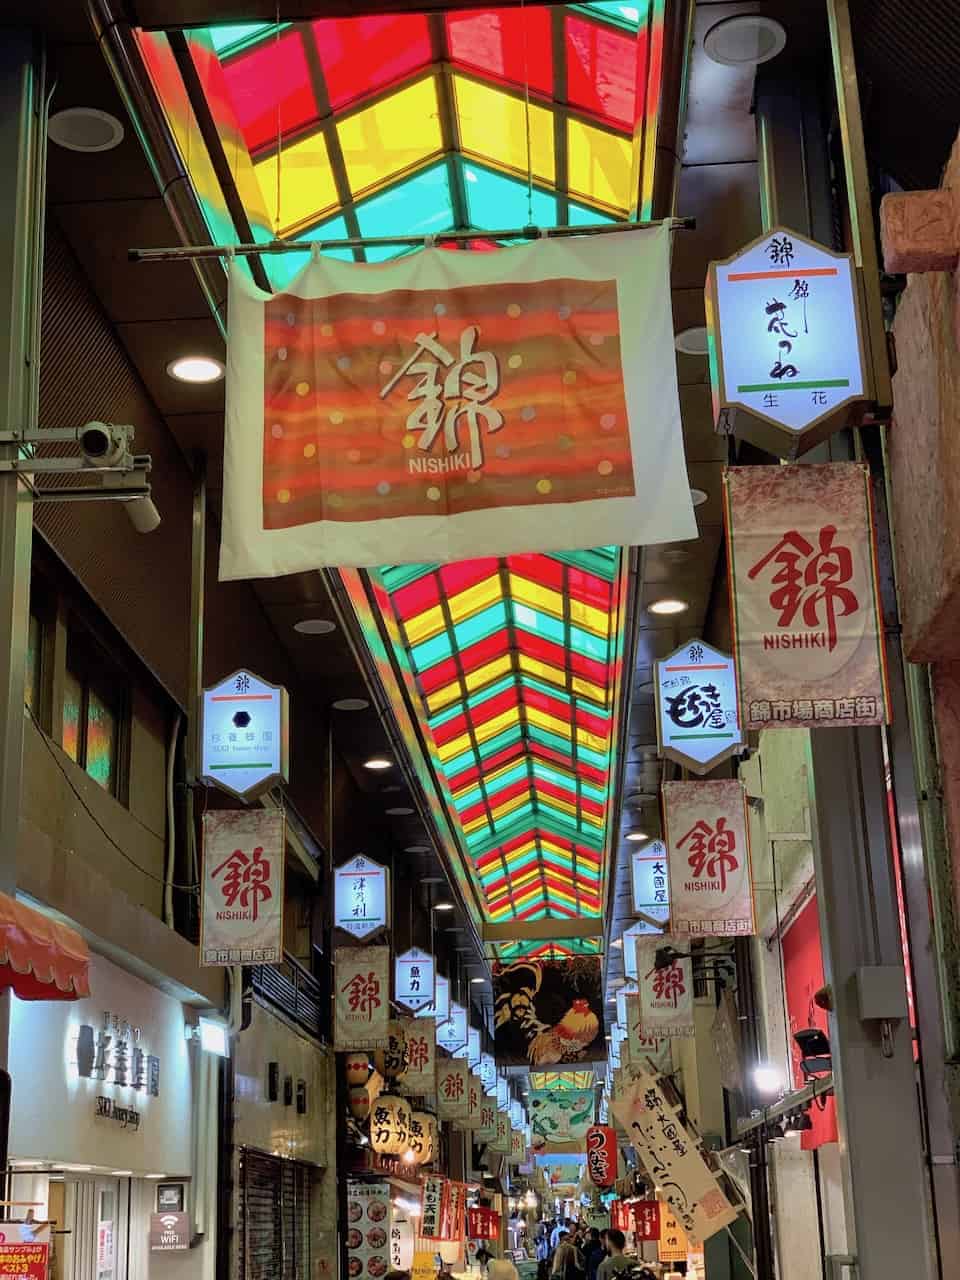 Nishiki Markt